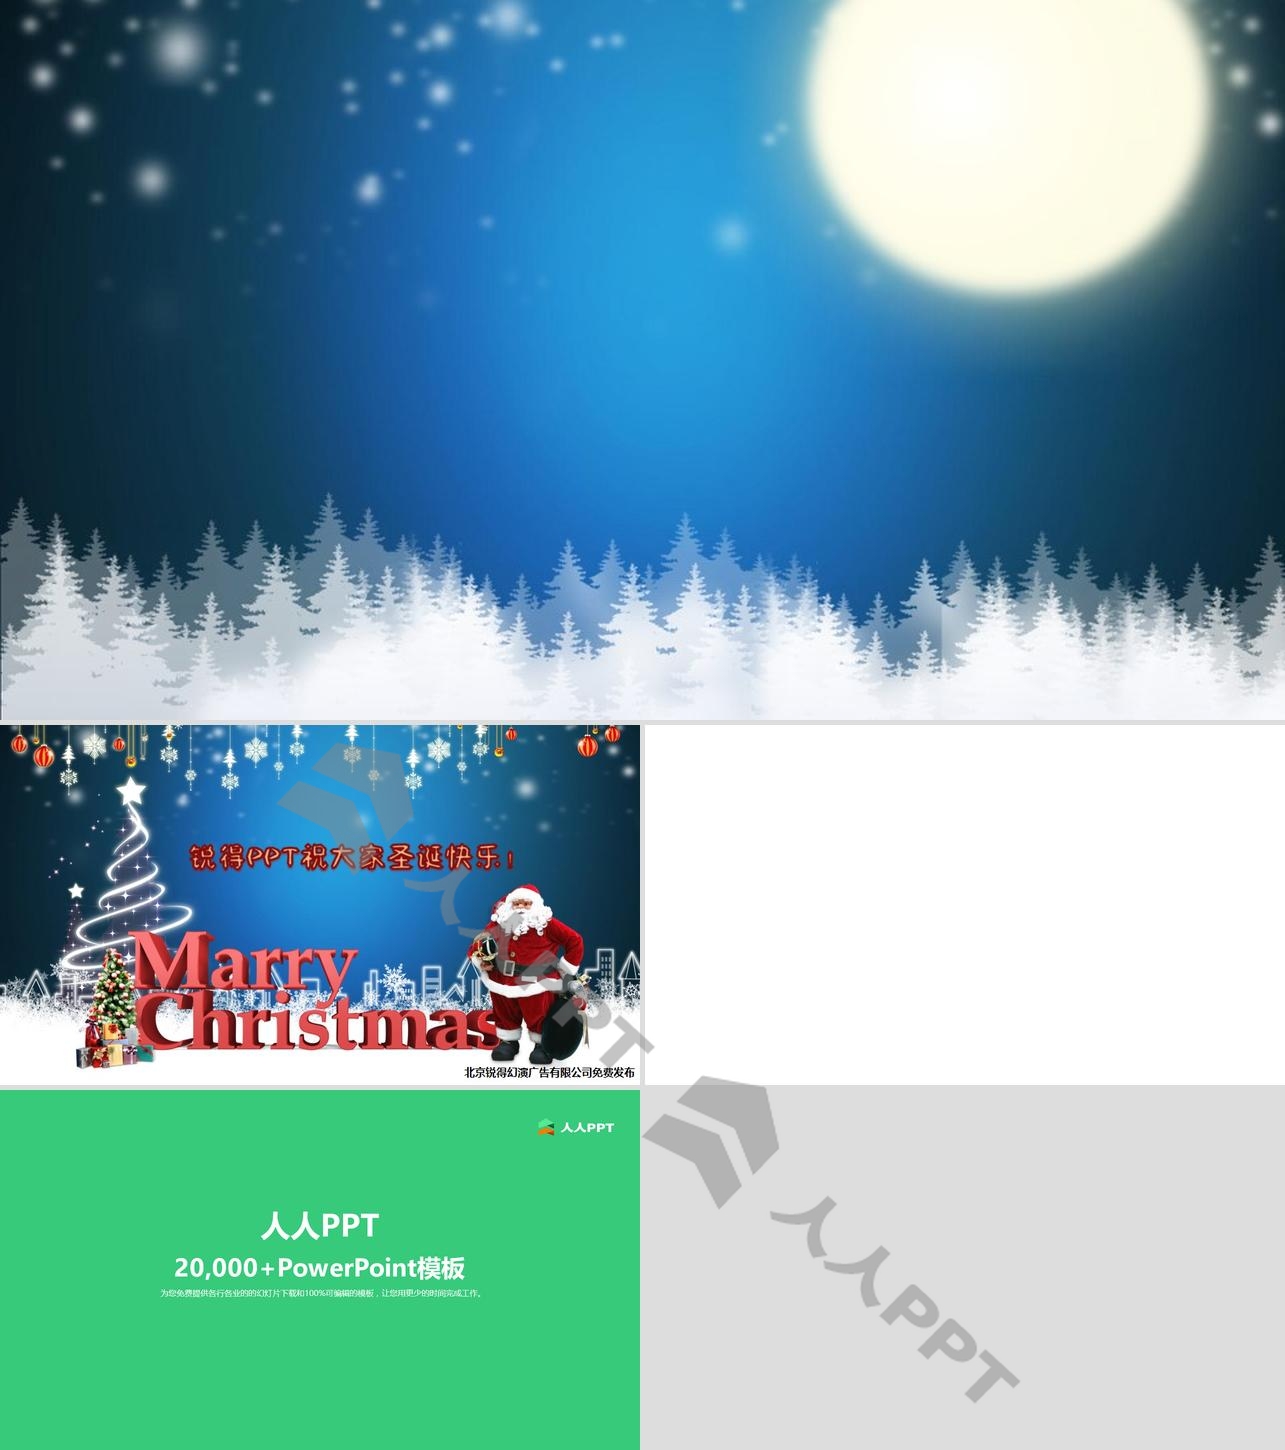 大雪纷飞圣诞老人送礼物――圣诞节音乐祝福贺卡PPT模板长图